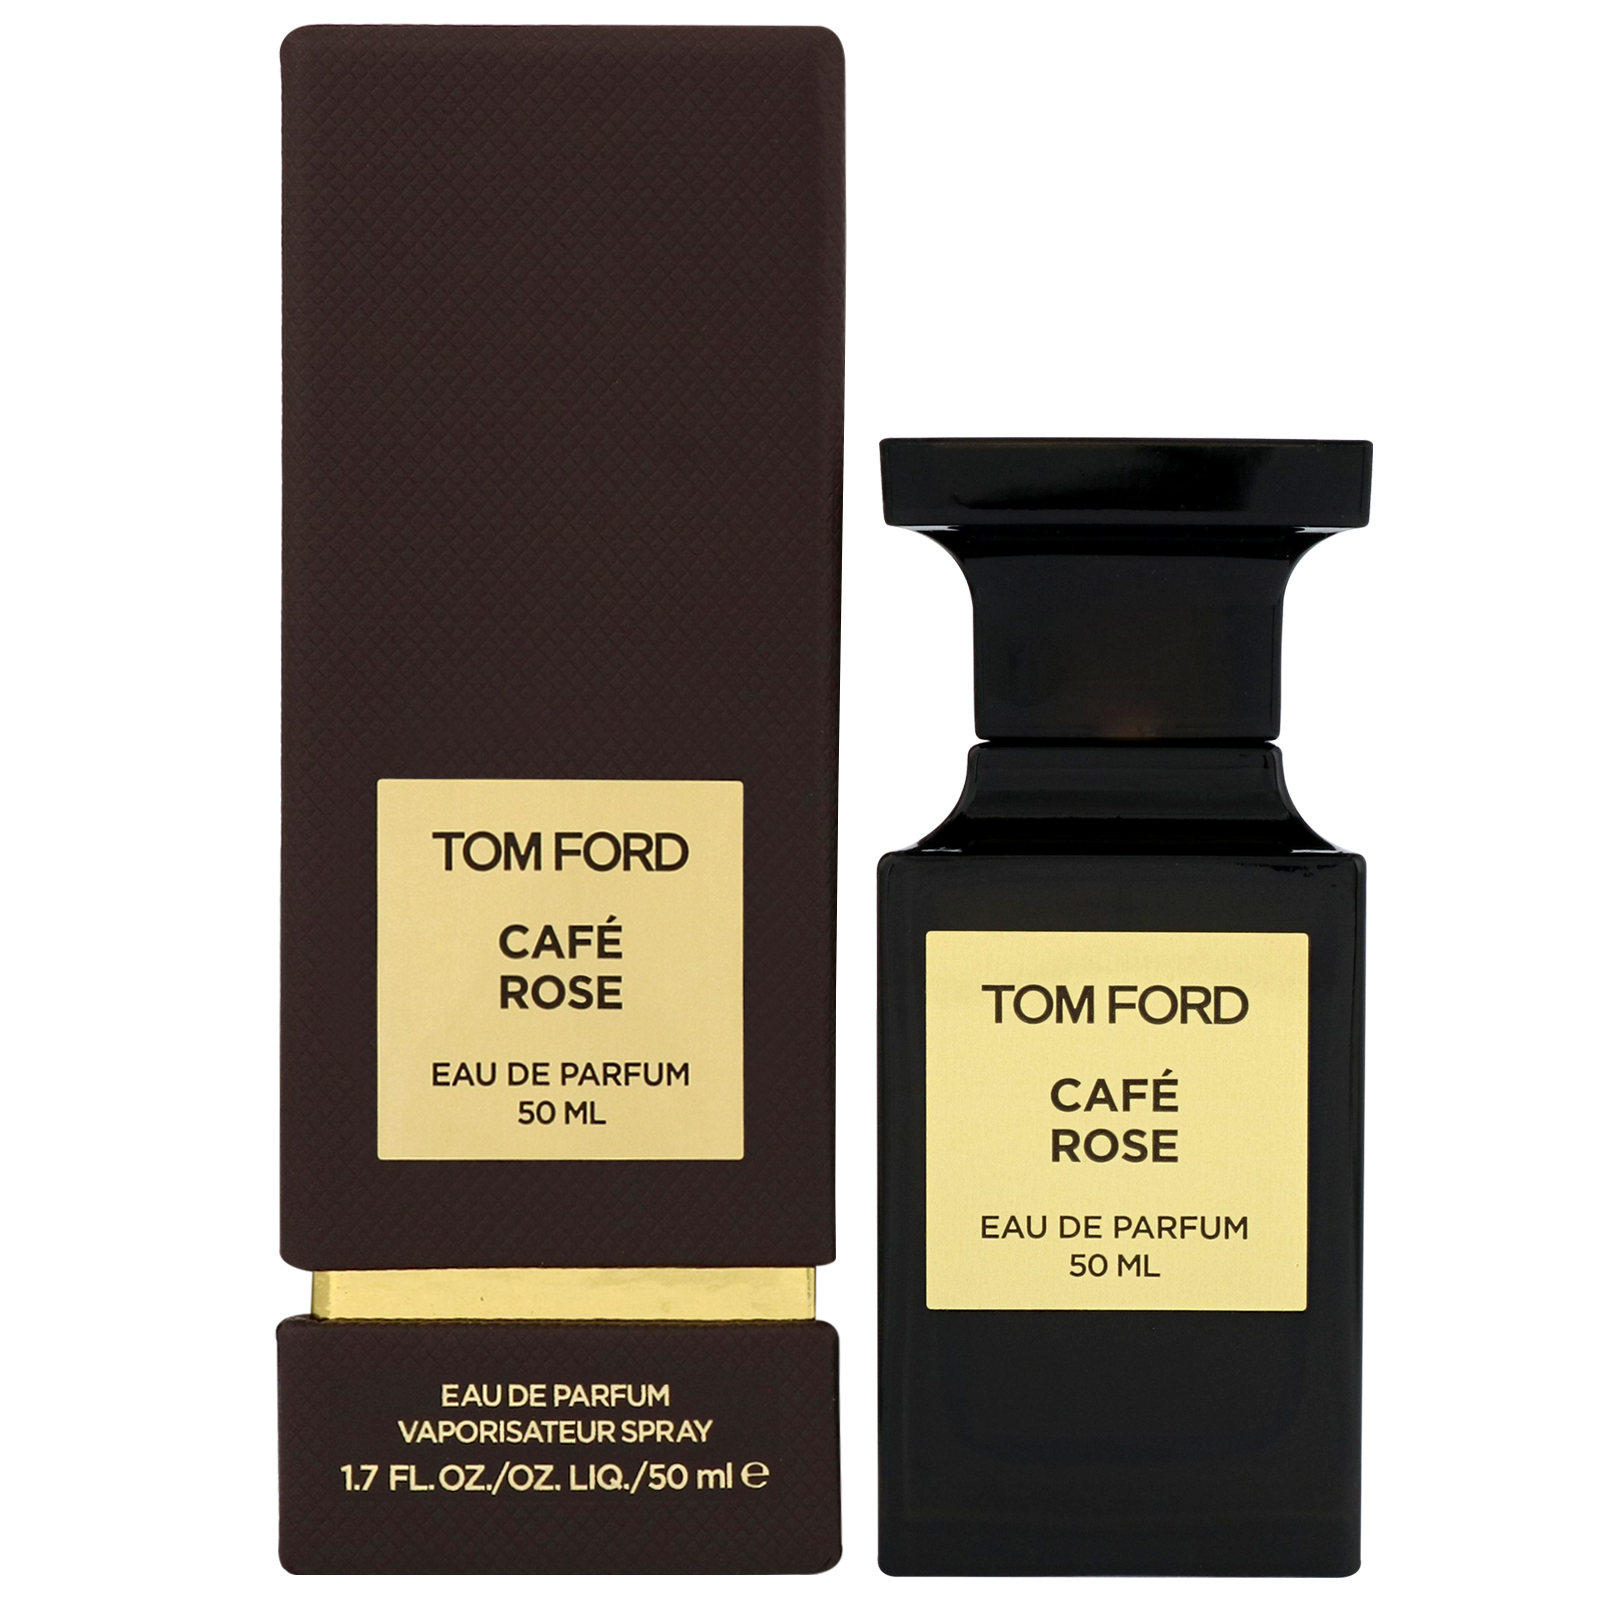 Tom Ford Cafe Rose EDP 50ml | Fehily's Pharmacy